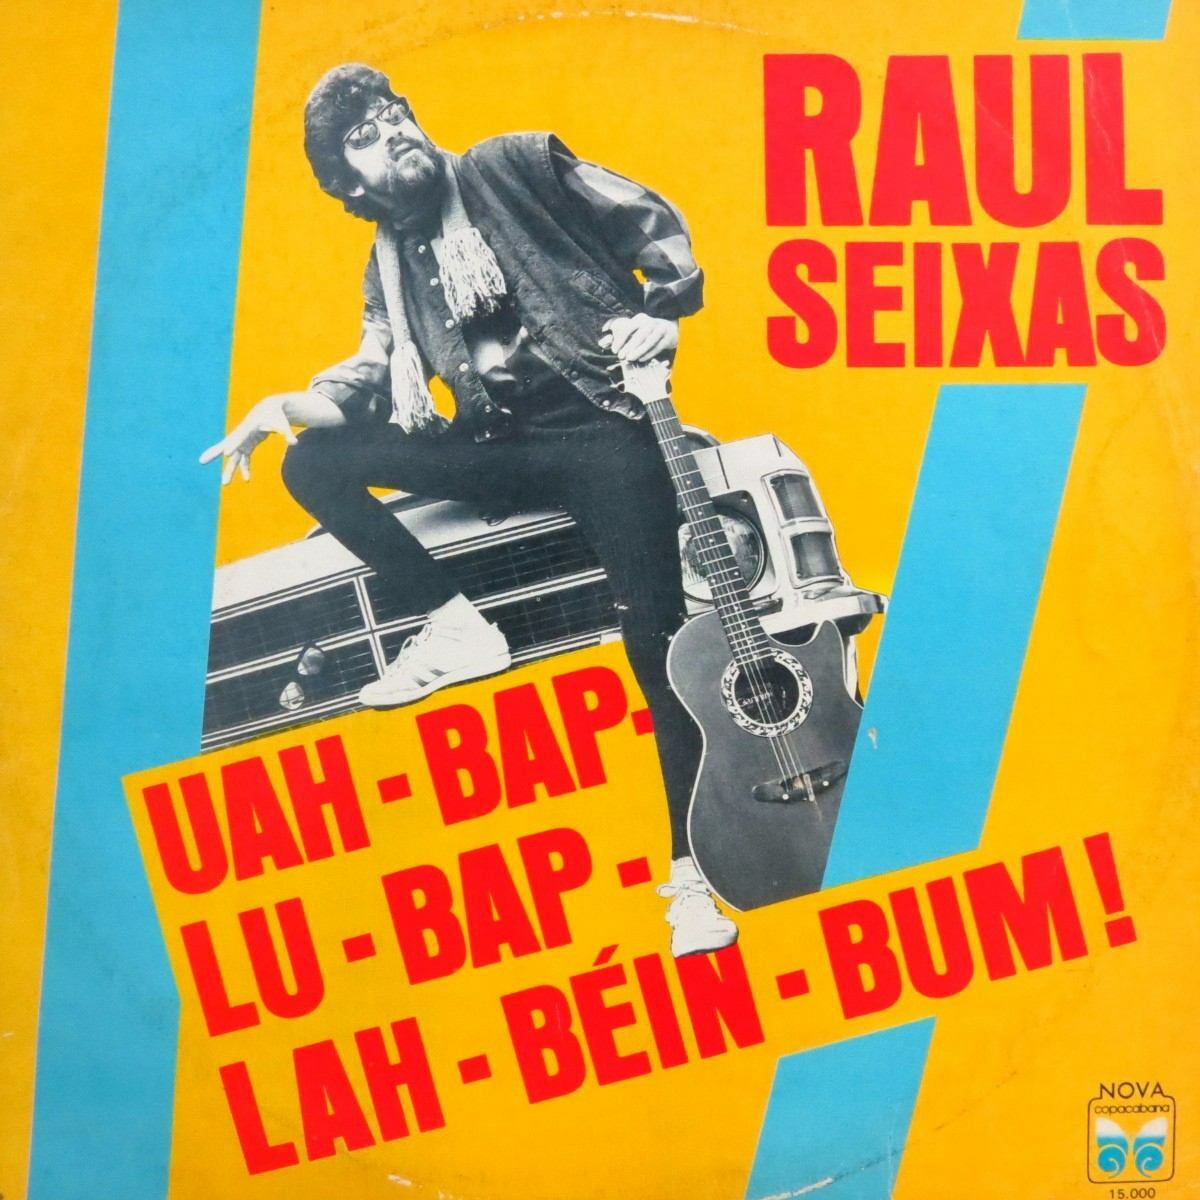 Vinil - Raul Seixas - Uah Bap Lu Bap Lah Bein Bum